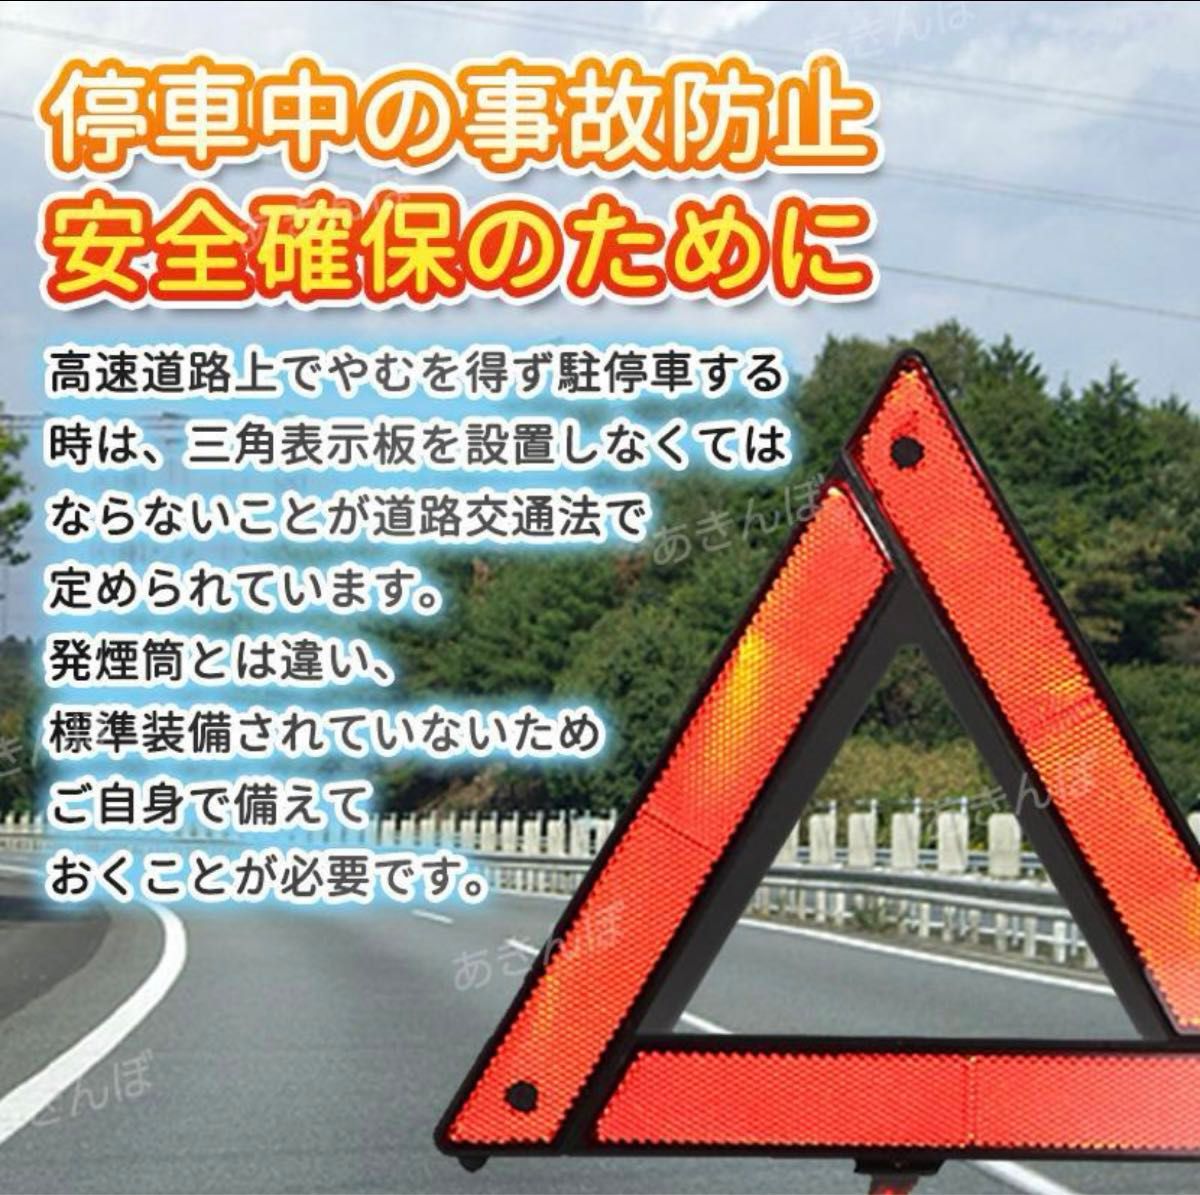 三角表示板 停止表示板 1個 車 折り畳み 警告版 事故 防止 停止板 バイク 反射板 警告灯 車 自動車 事故 防止 安全 安心